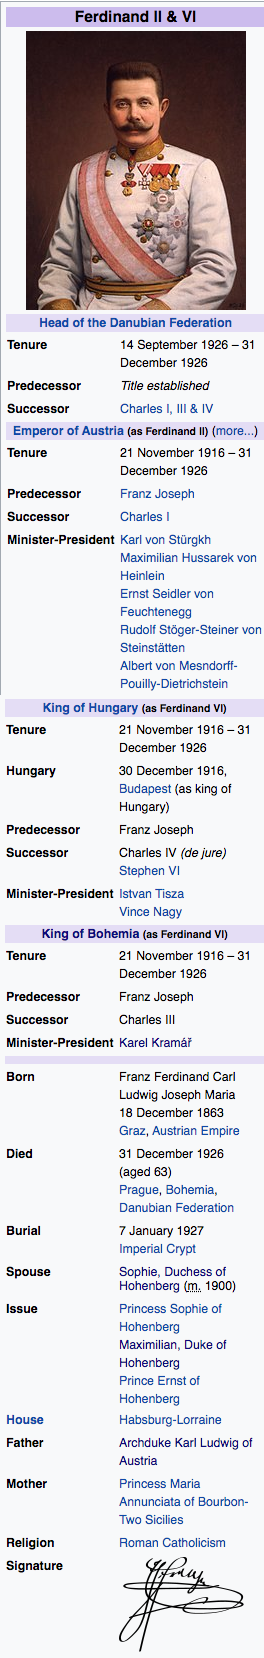 Franz Ferdinand.png